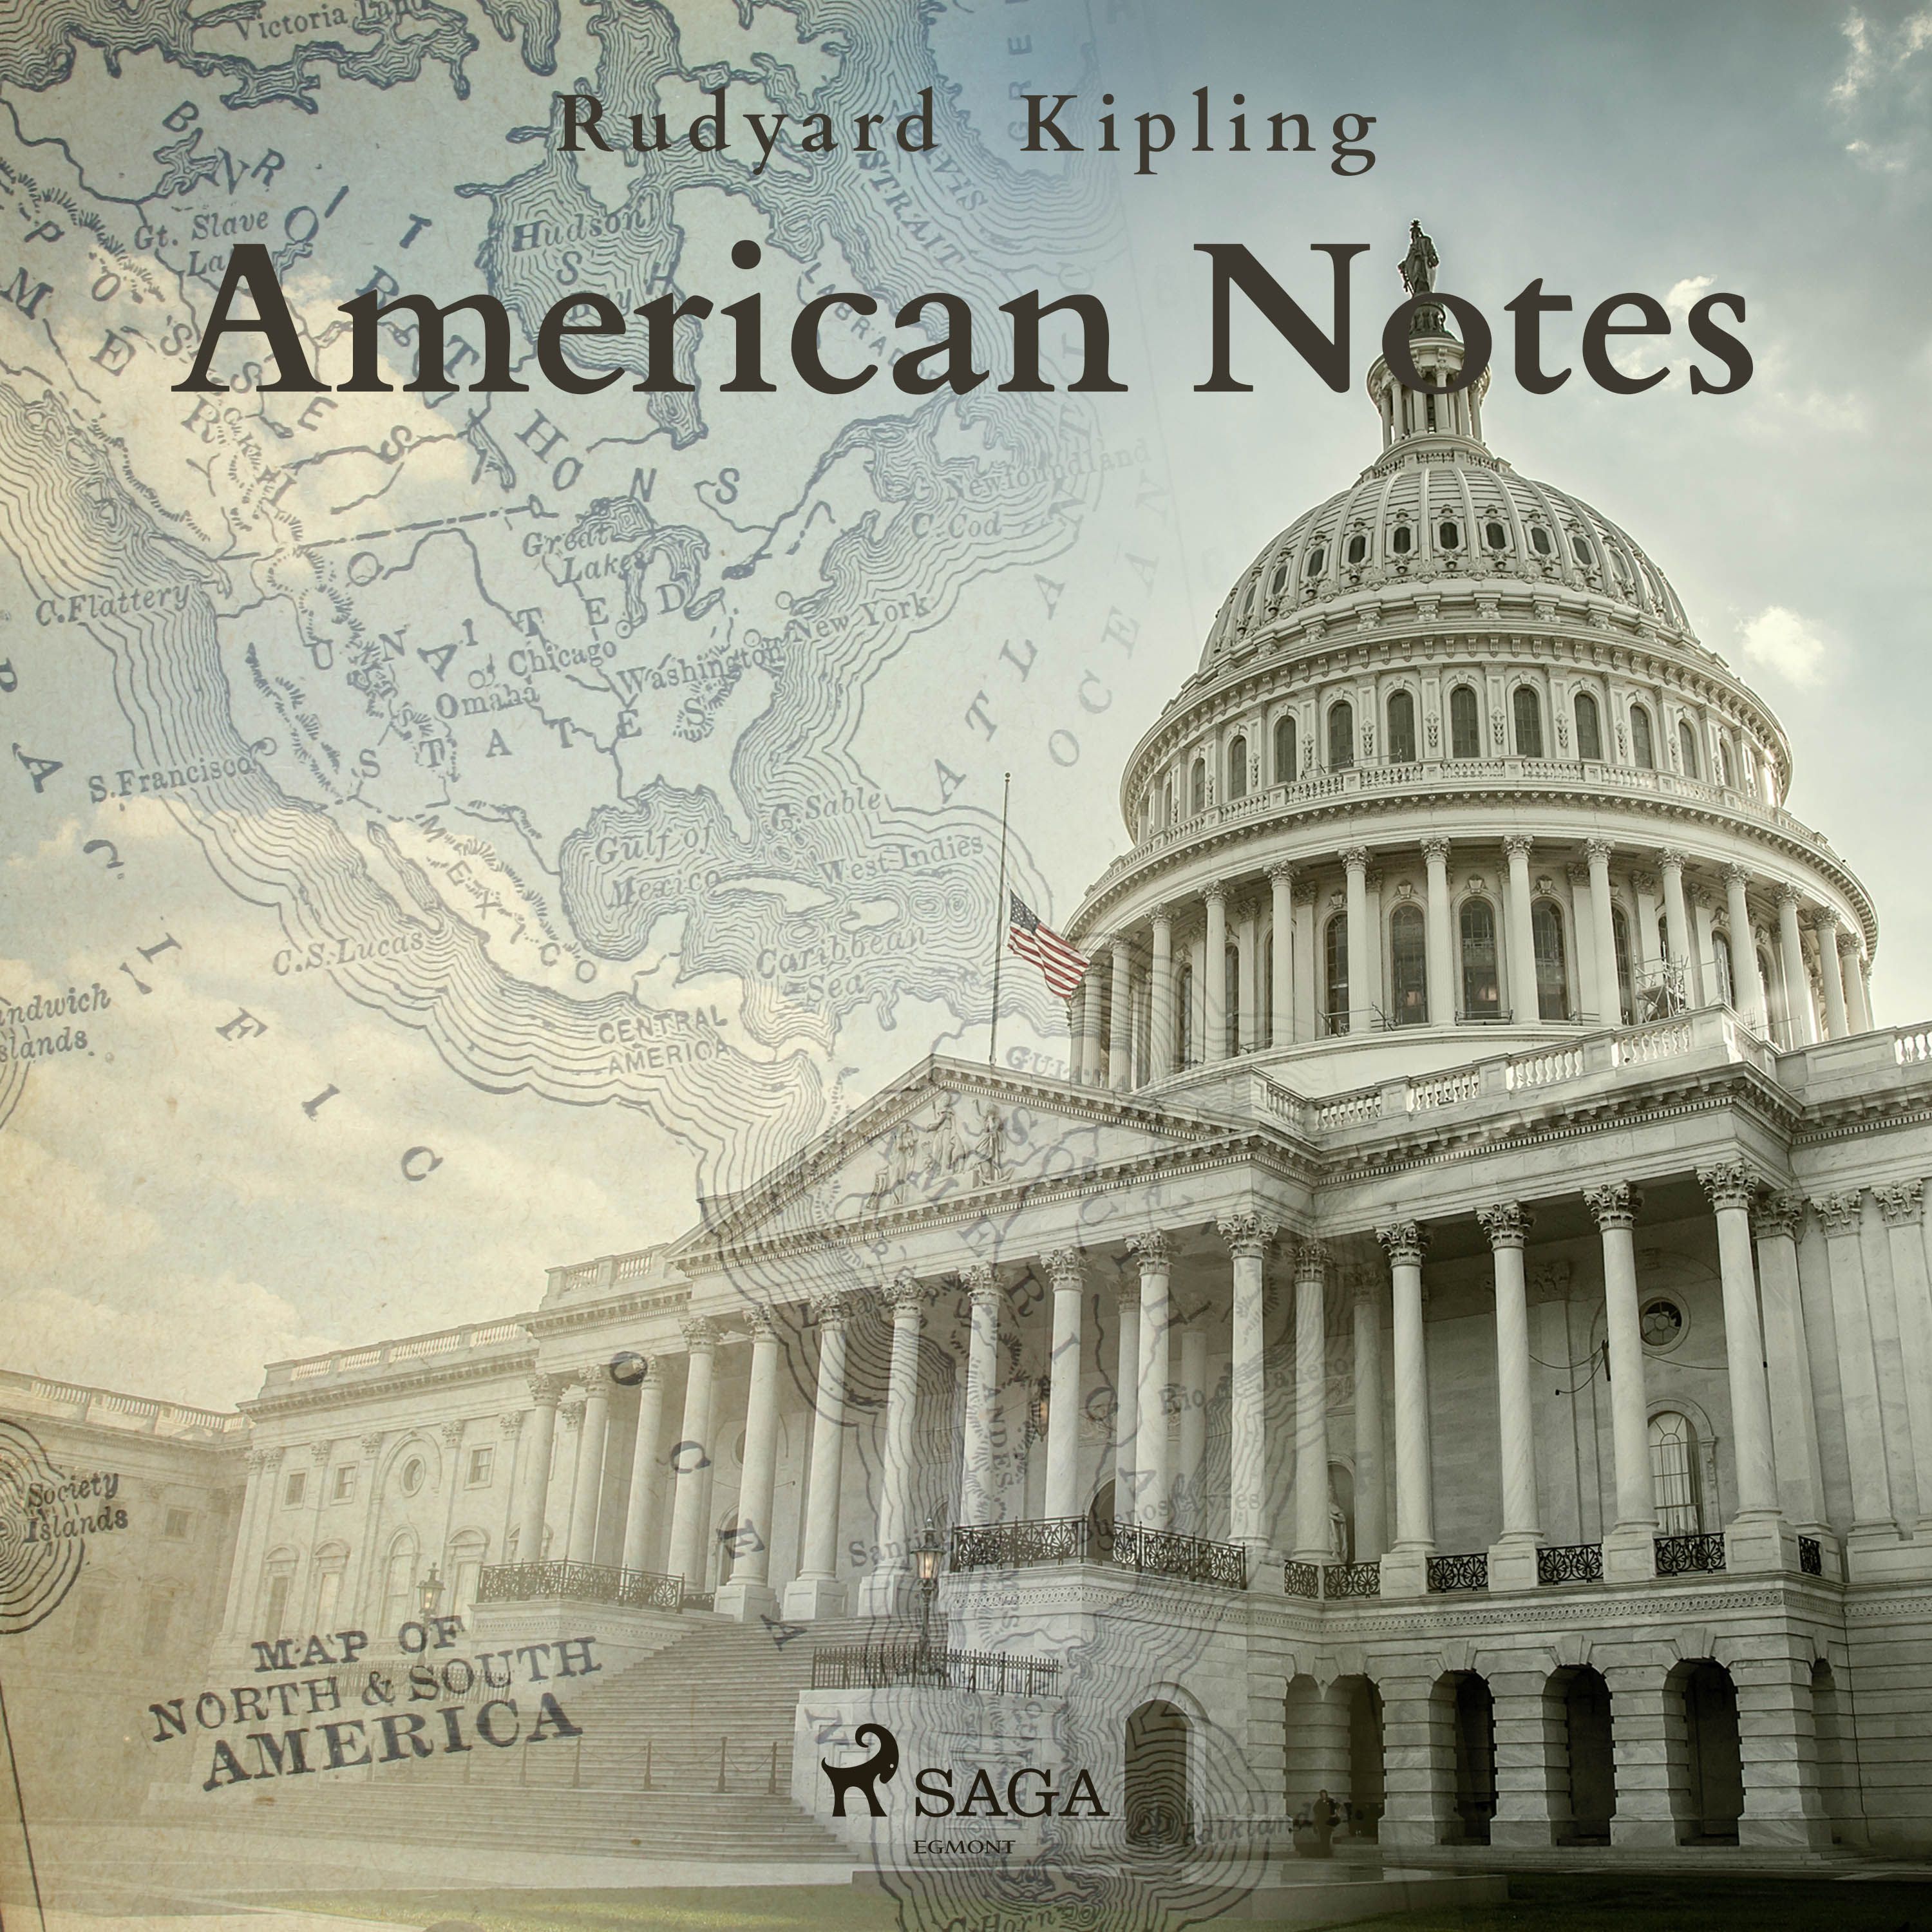 American Notes, lydbog af Rudyard Kipling